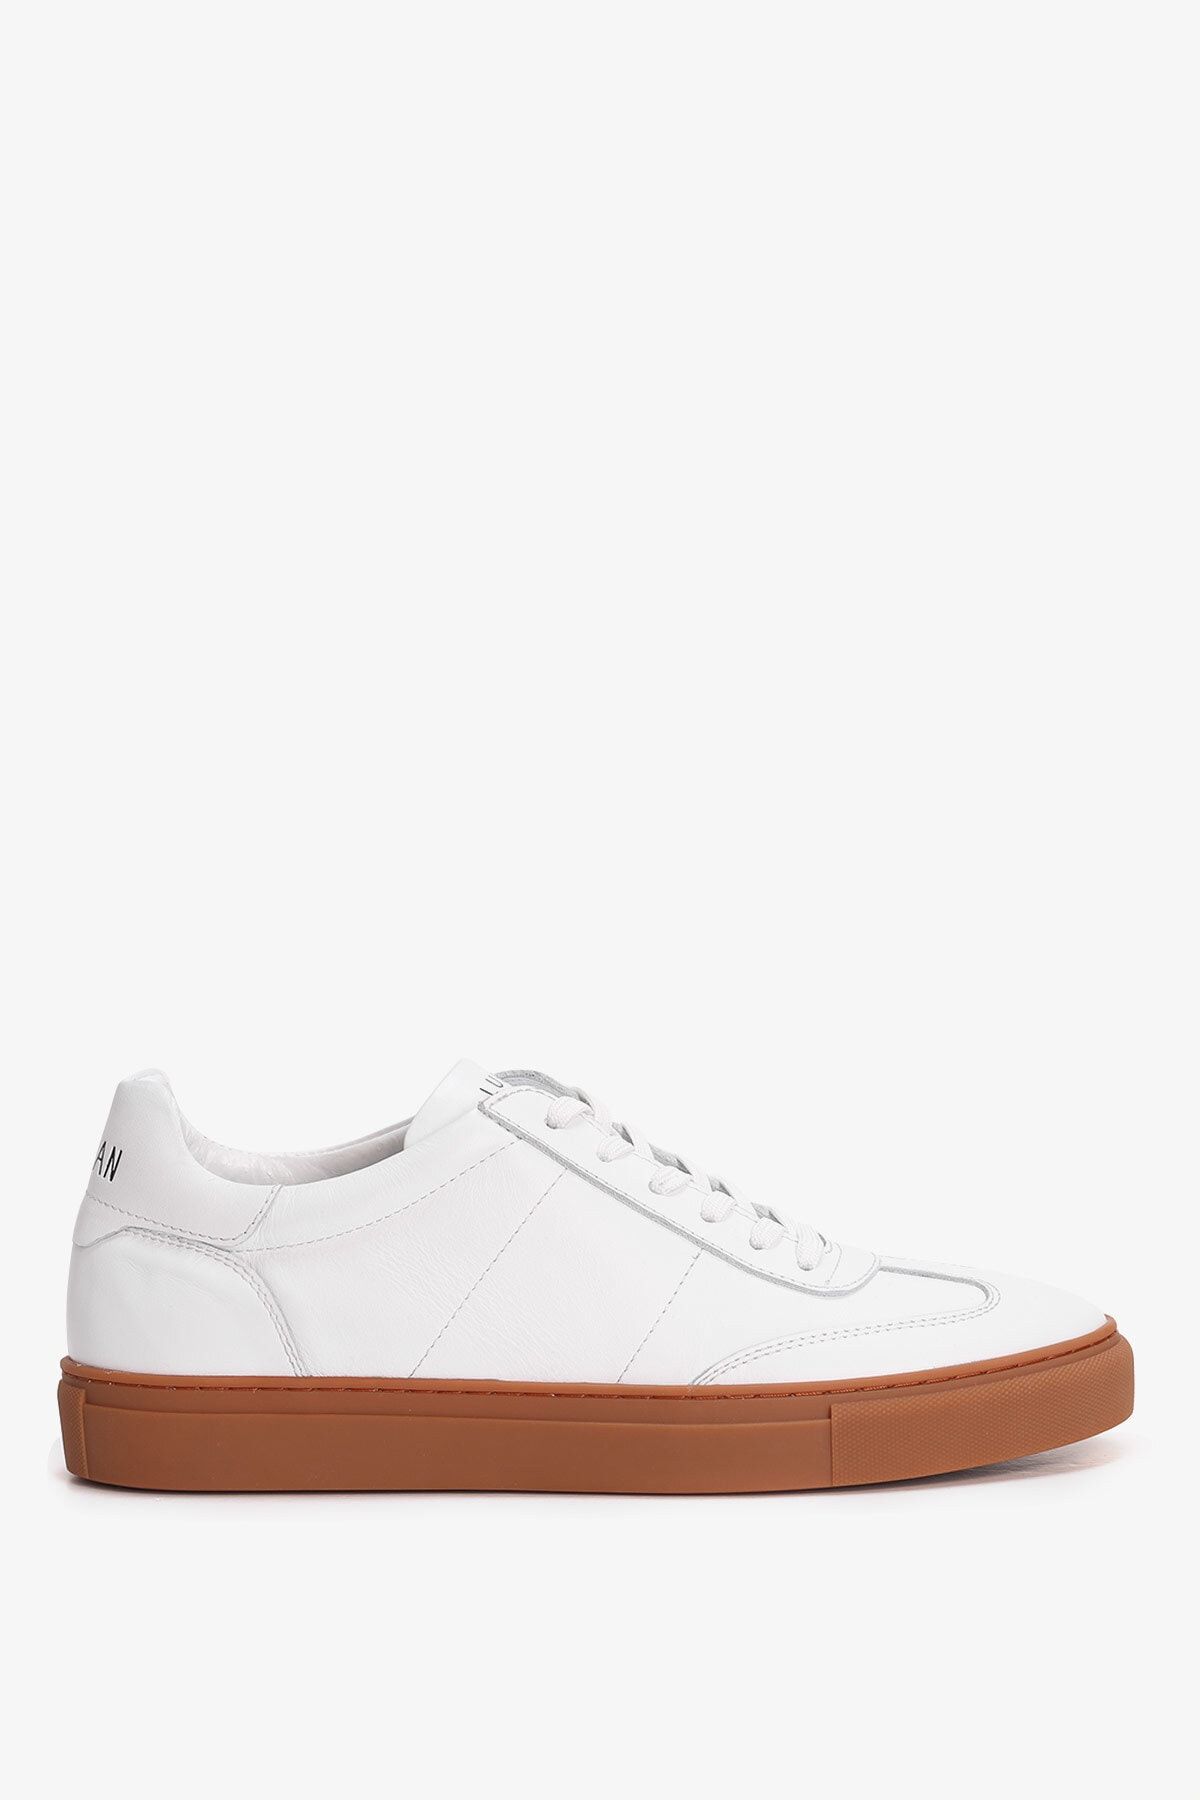 Lufian Josef Erkek Deri Sneaker Ayakkabı Beyaz